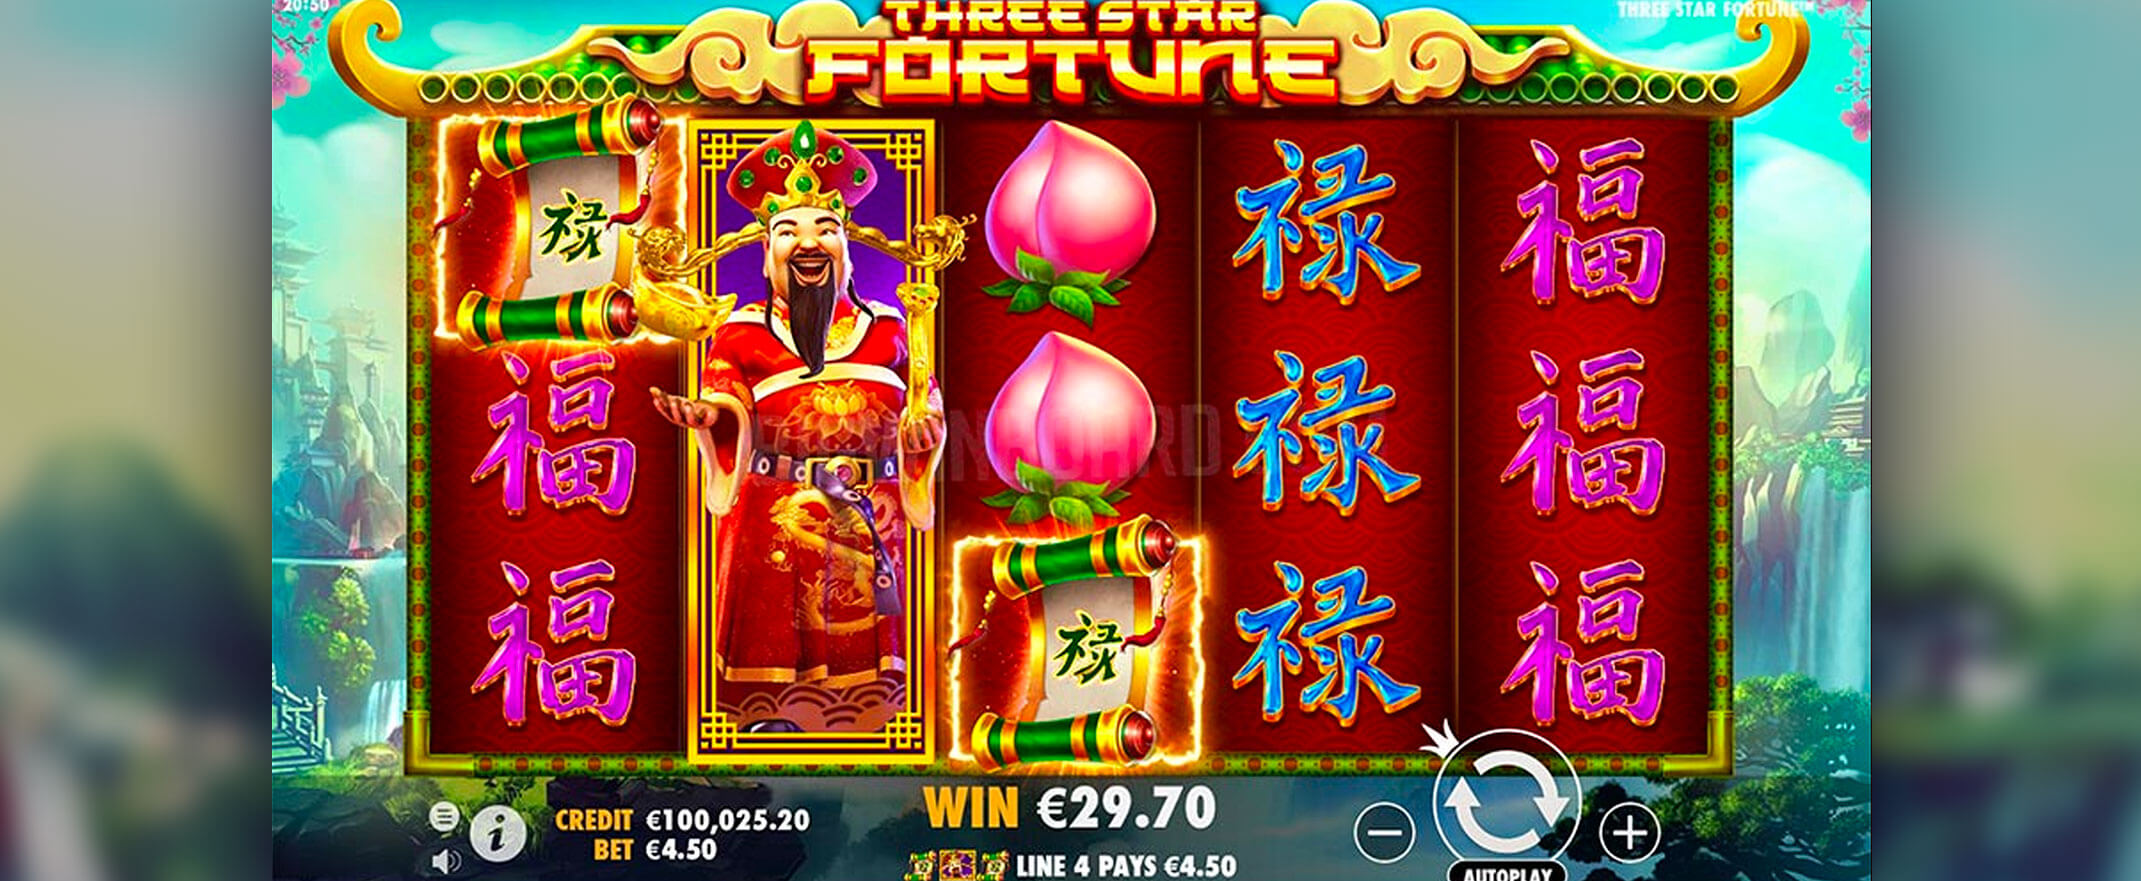 Three Star Fortune Spielautomaten Bewertung